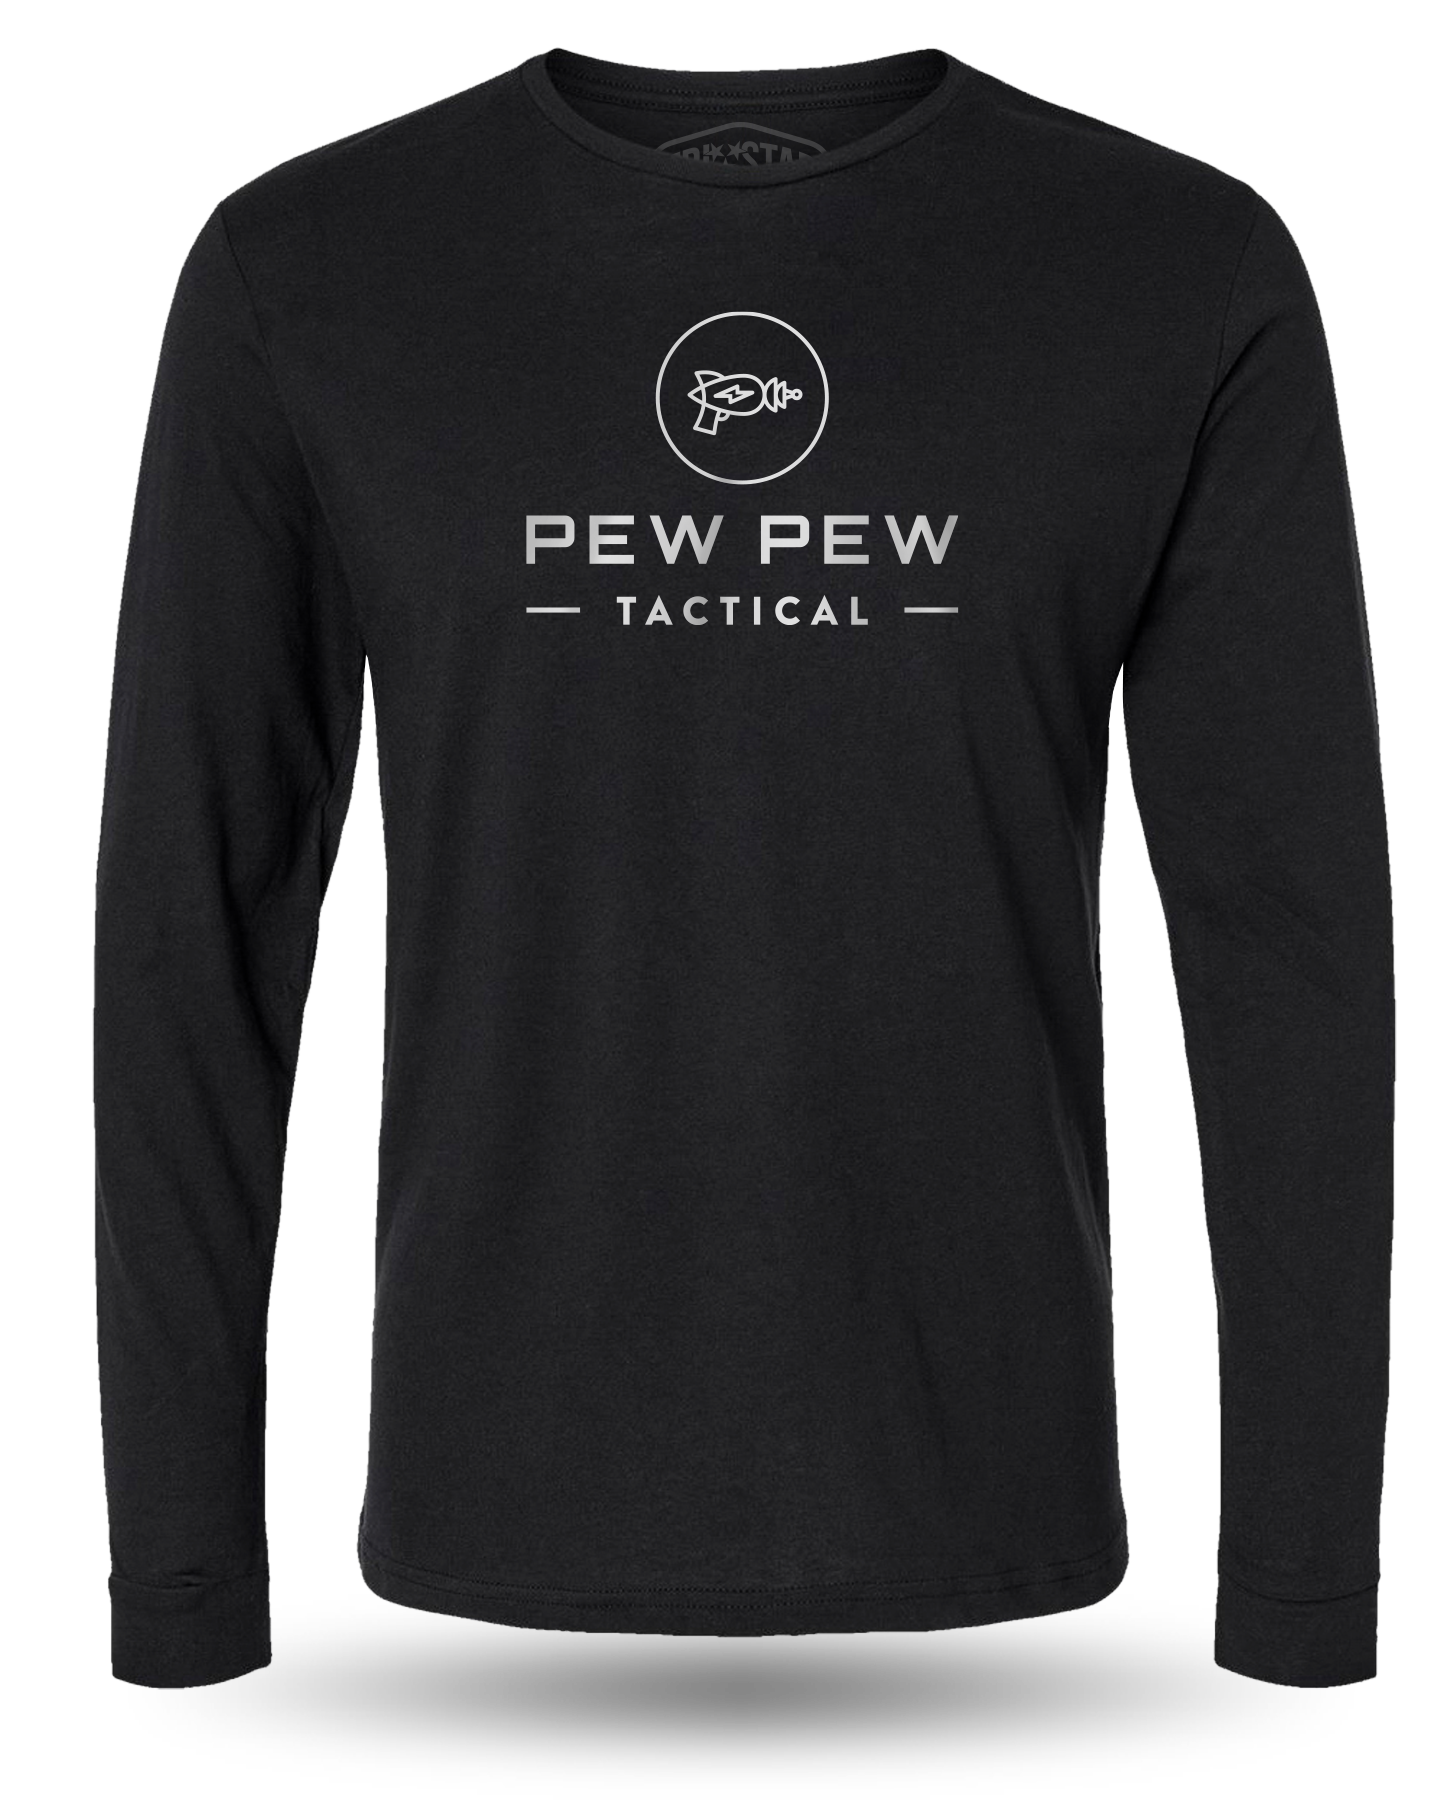 LONG SLEEVE - Pew Pew Tactical Original Tee